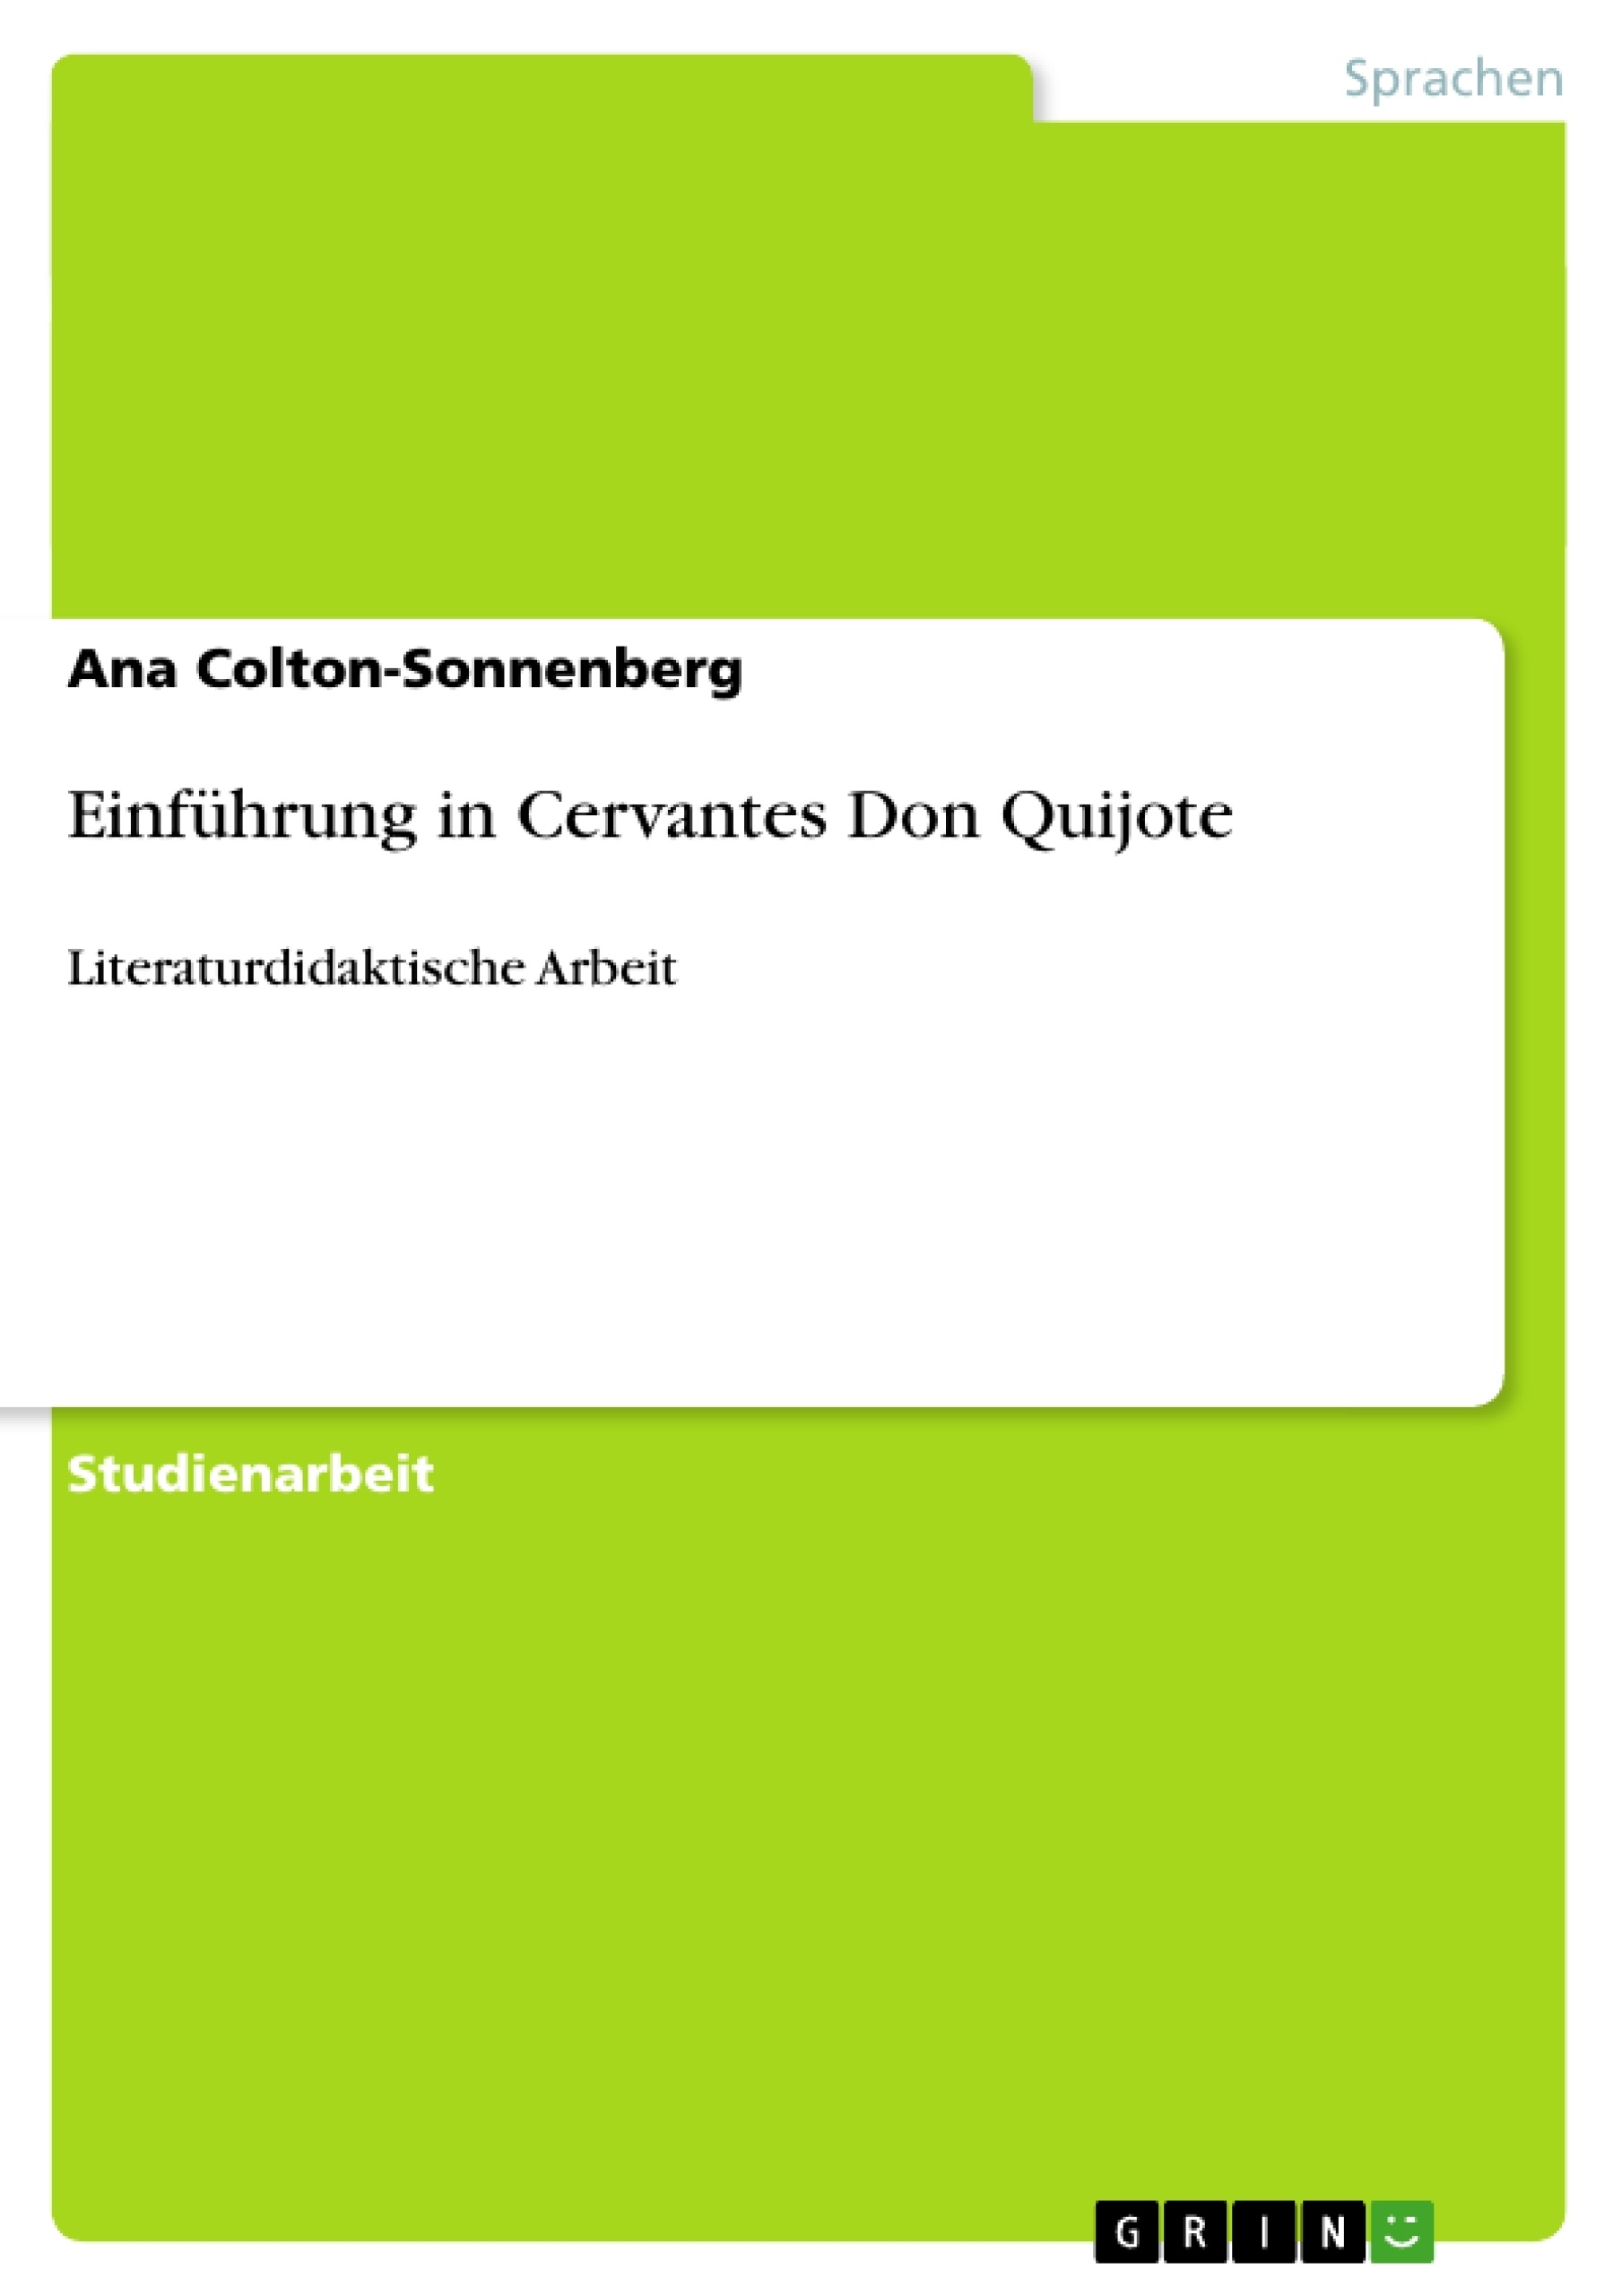 Título: Einführung in Cervantes Don Quijote